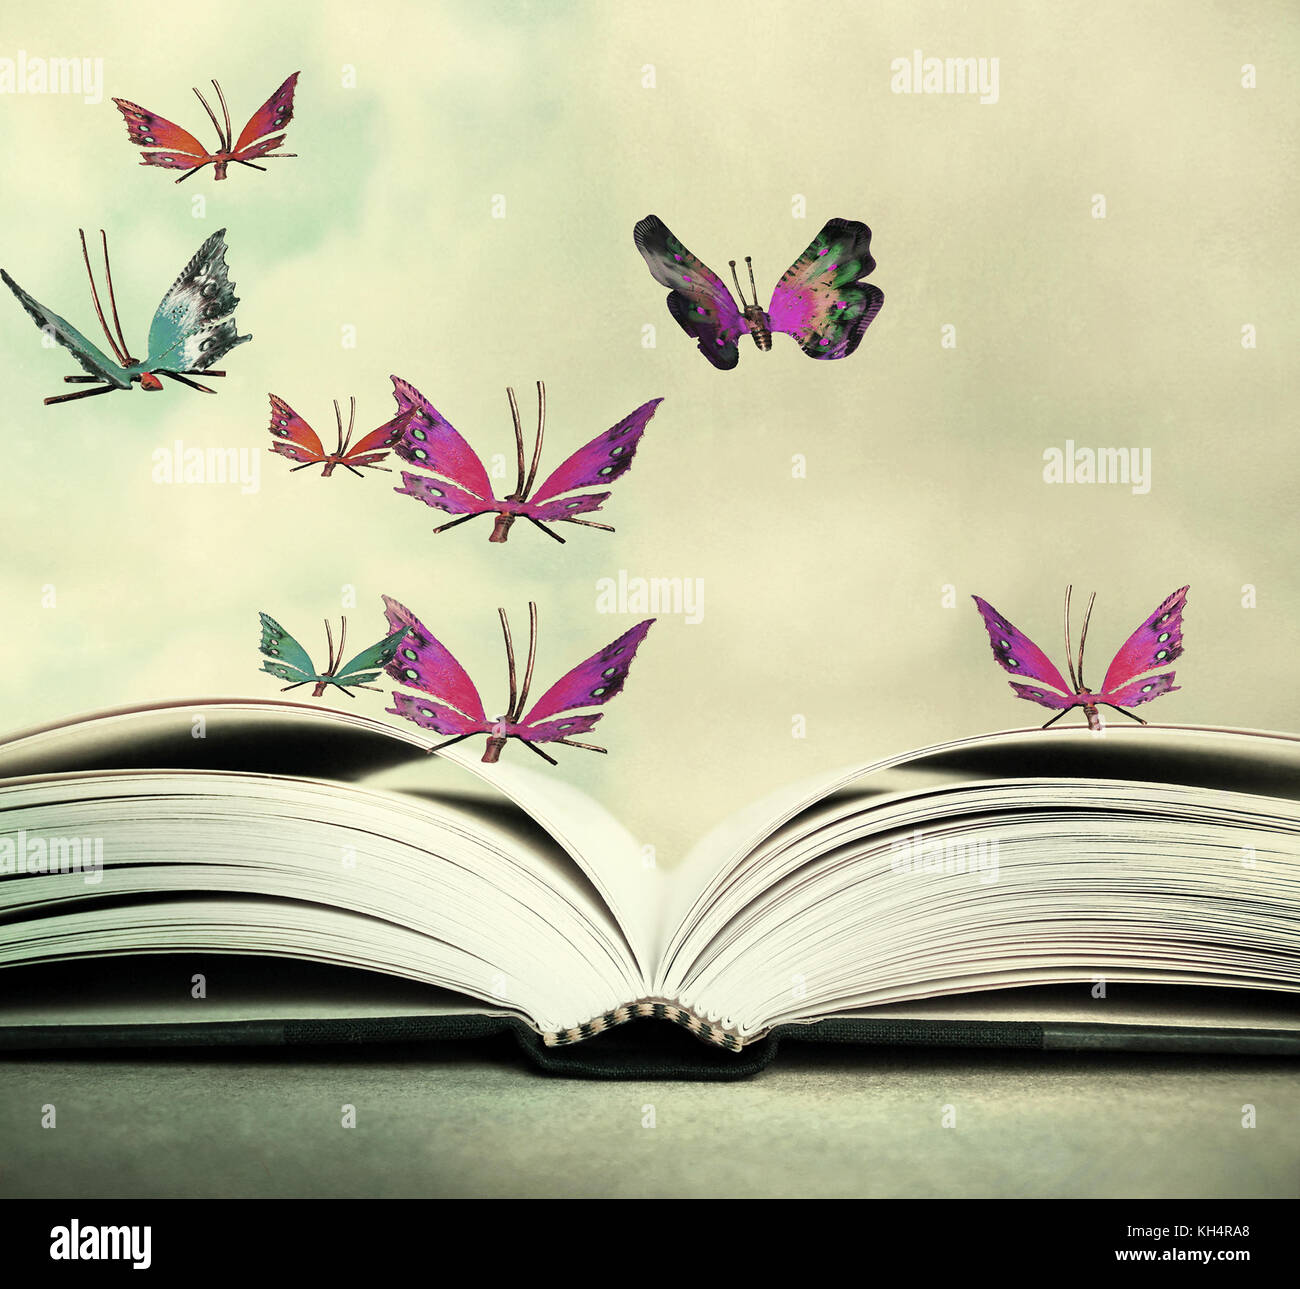 Künstlerische Bild von einem offenen Buch und bunte Schmetterlinge, die in der Luft schweben Stockfoto